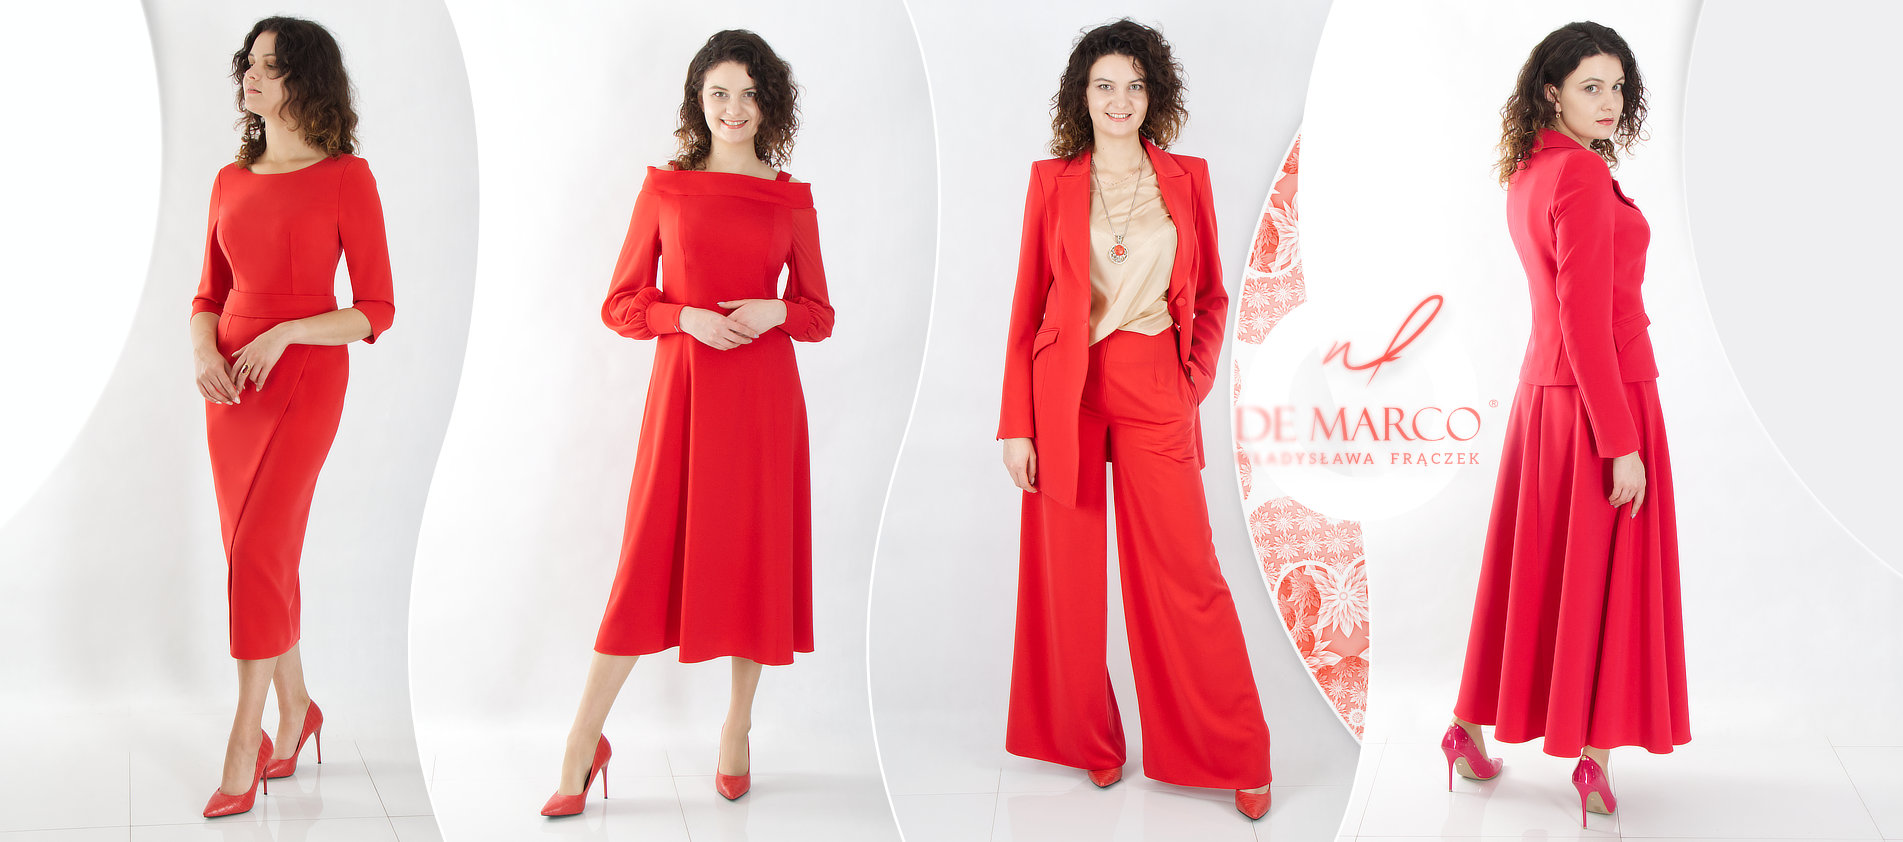 Ekskluzywne polskie ubrania damskie De Marco profesjonalne krawiectwo miarowe. Ubranie inwestycyjne, odzież wizytowa i dyplomatyczna dobrej jakości.